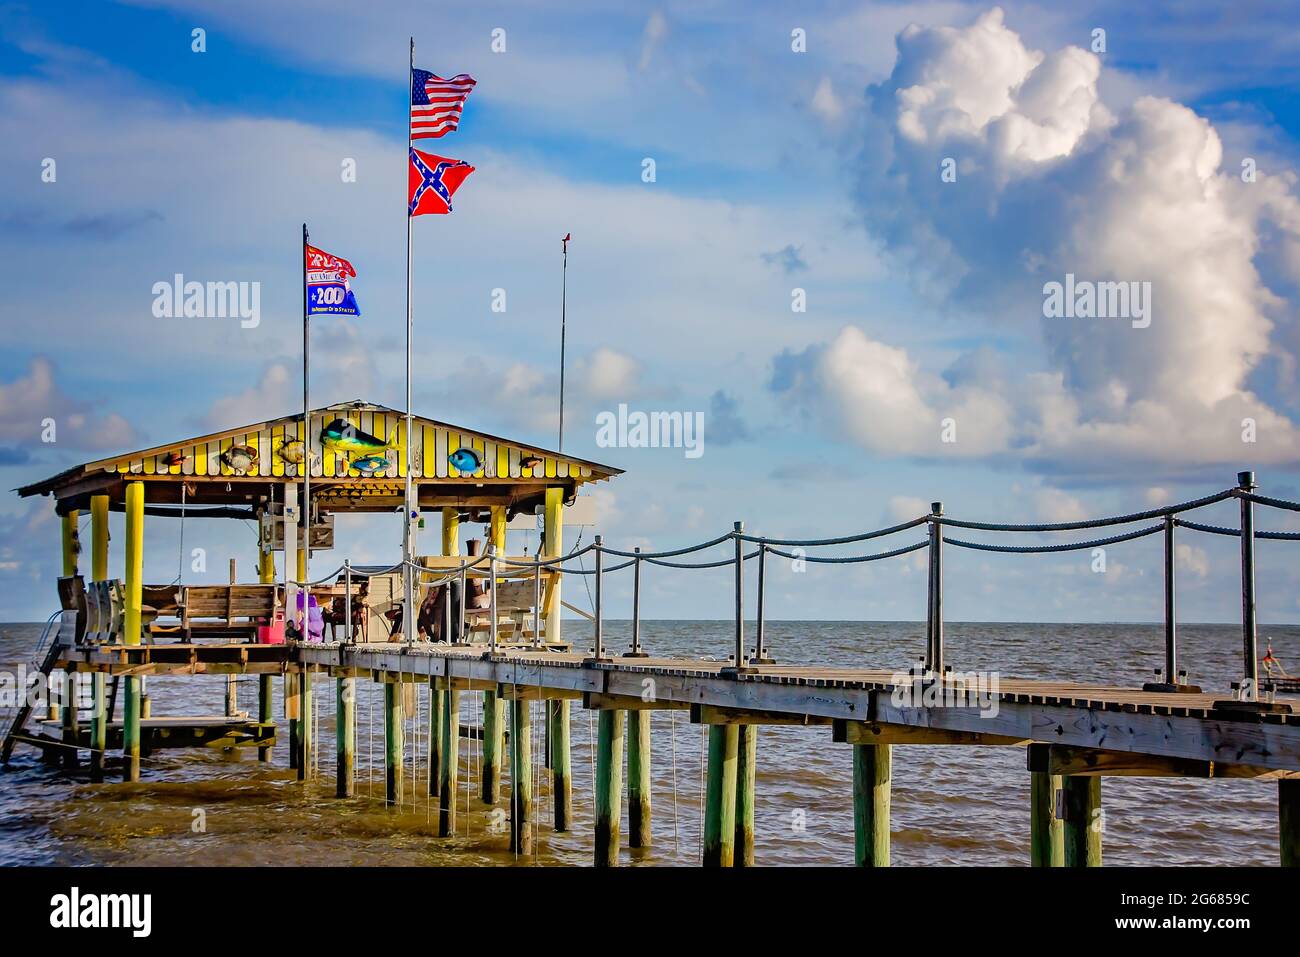 Am 1. Juli 2021, an einem Pier am CODEN Beach in CODEN, Alabama, fliegt eine Trump 2020-Flagge neben einer amerikanischen und einer konföderierten Flagge. Stockfoto